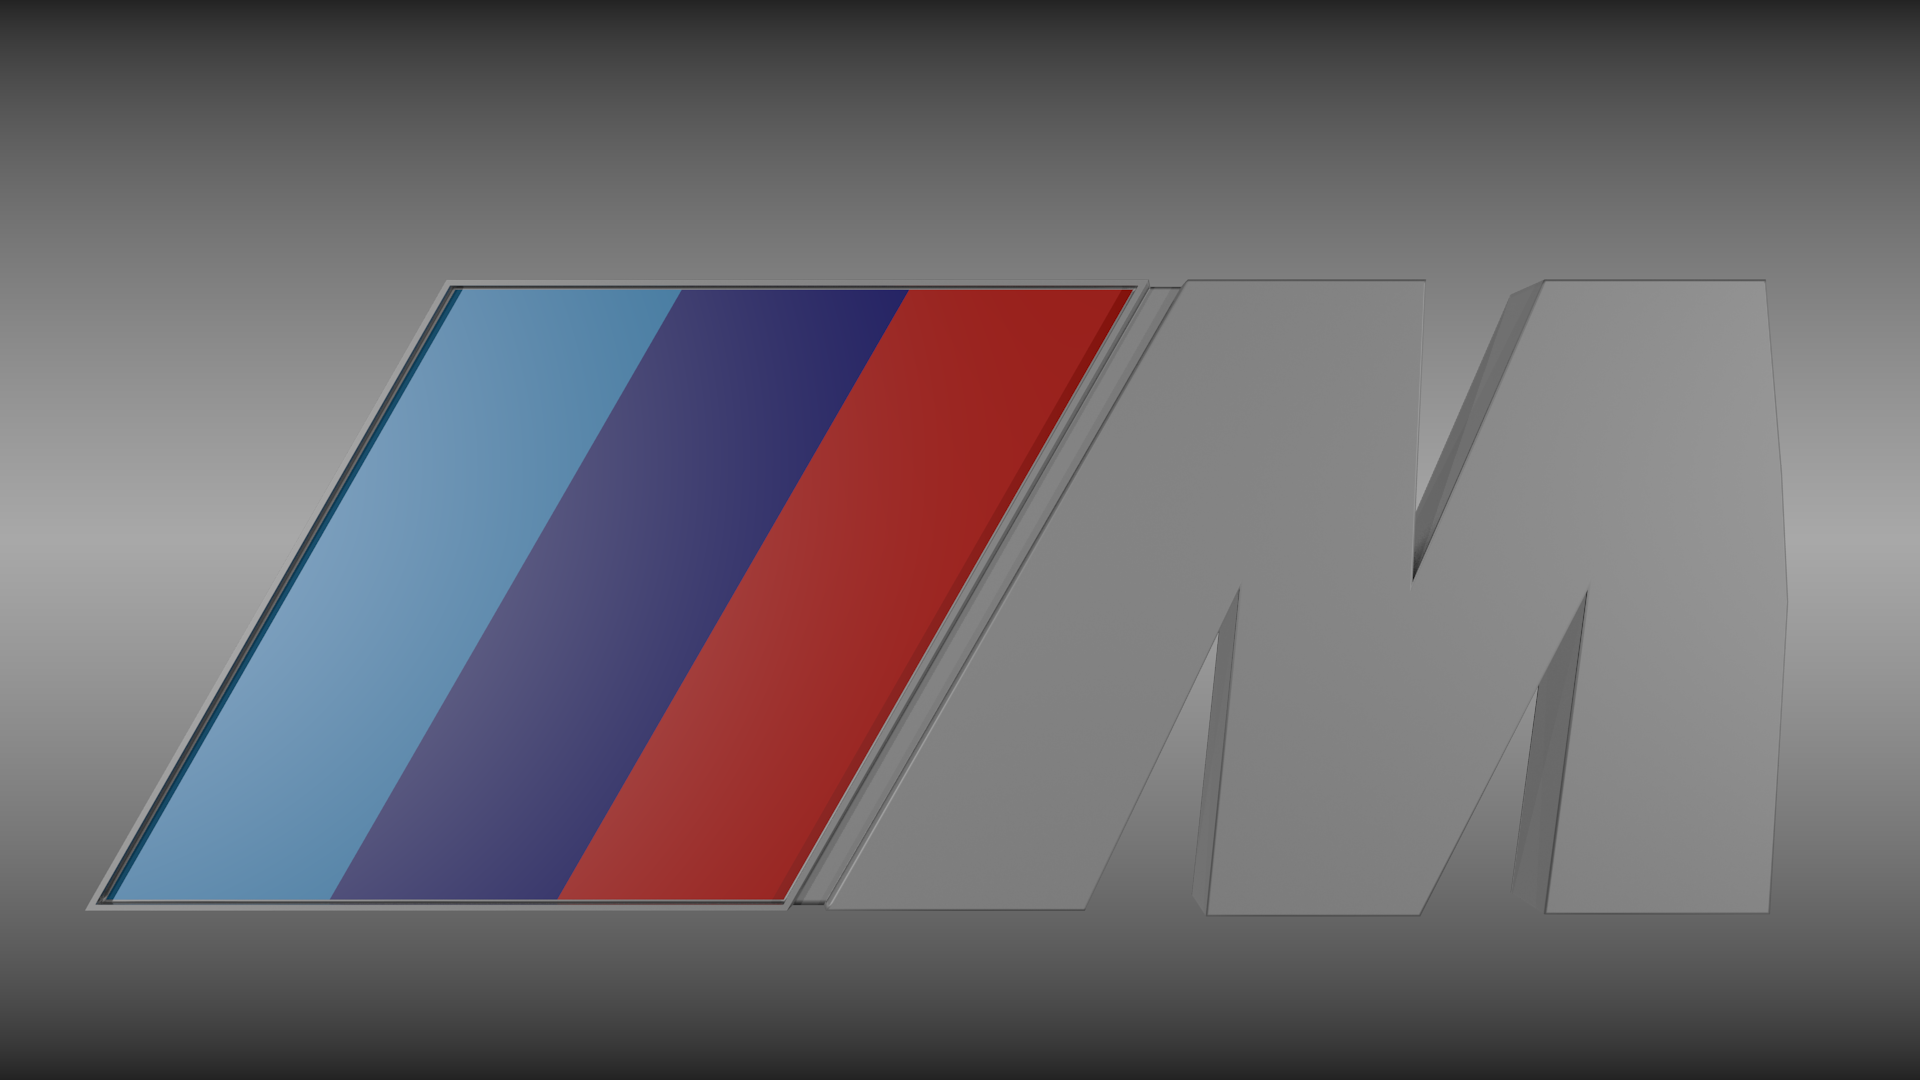 Bmw M Logo Wallpaper